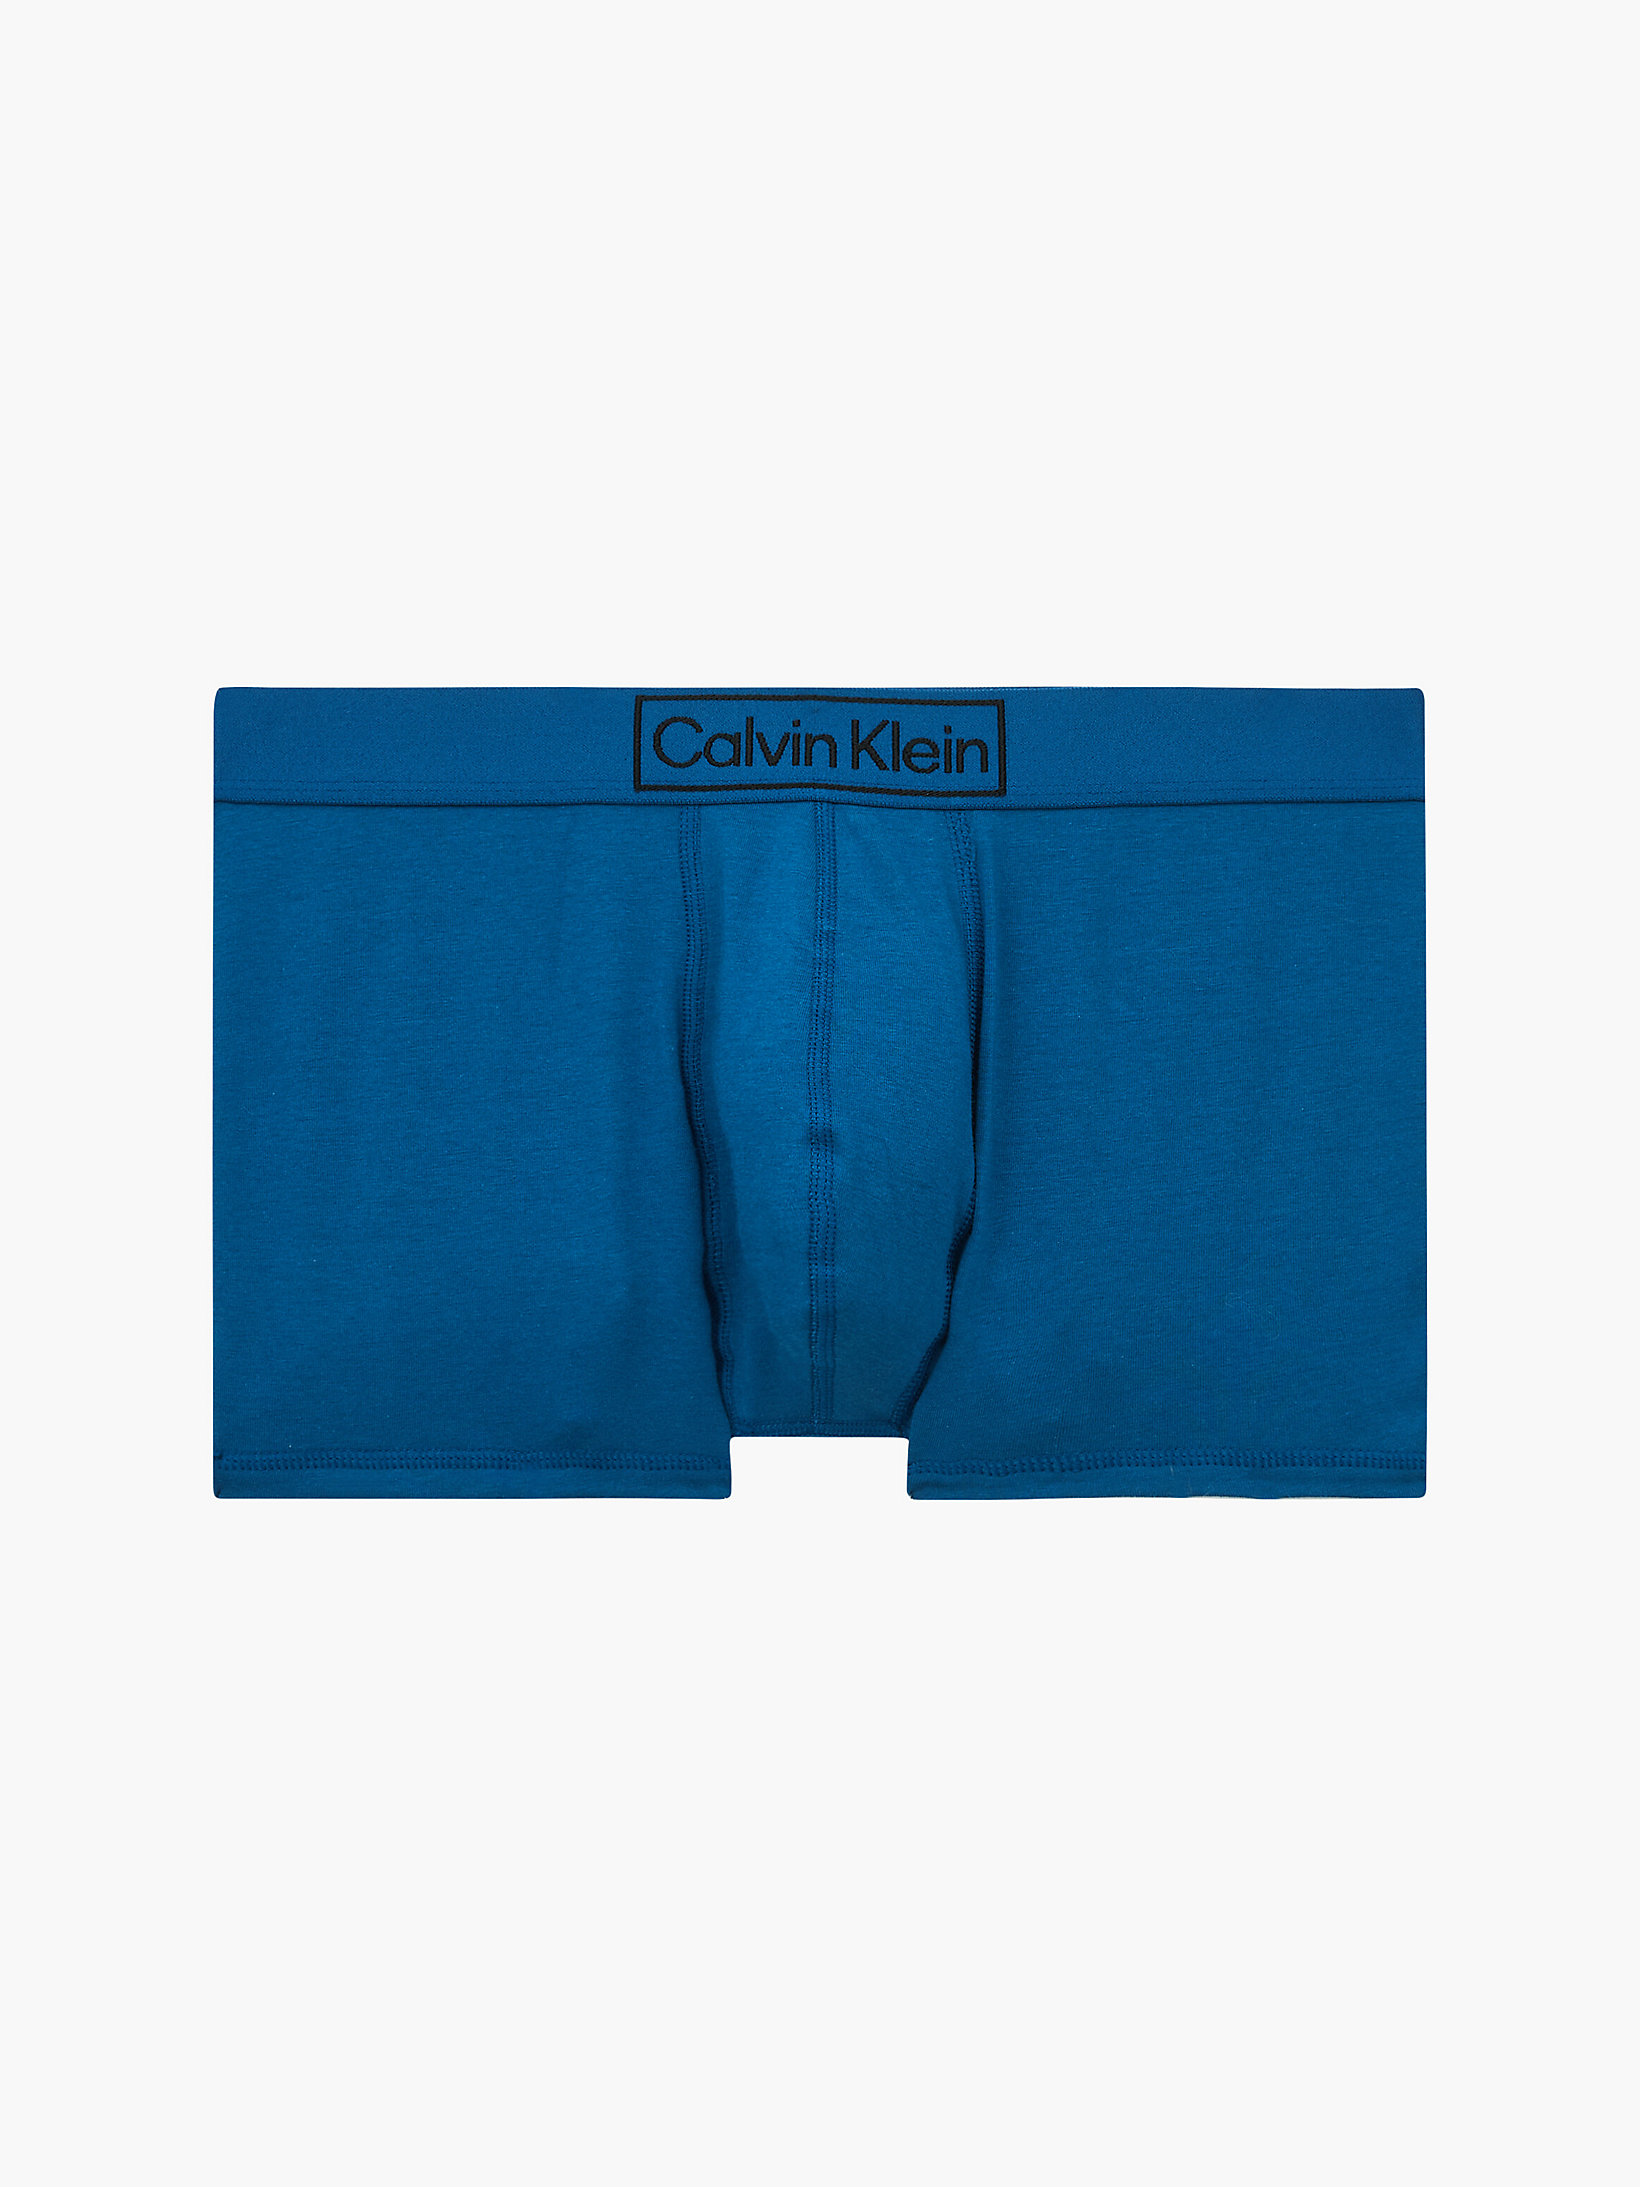 Calvin Klein Baumwolle Set 3 Slips Aus Baumwolle Mit Logo in Blau für Herren Herren Bekleidung Unterwäsche Boxershorts und Slips 